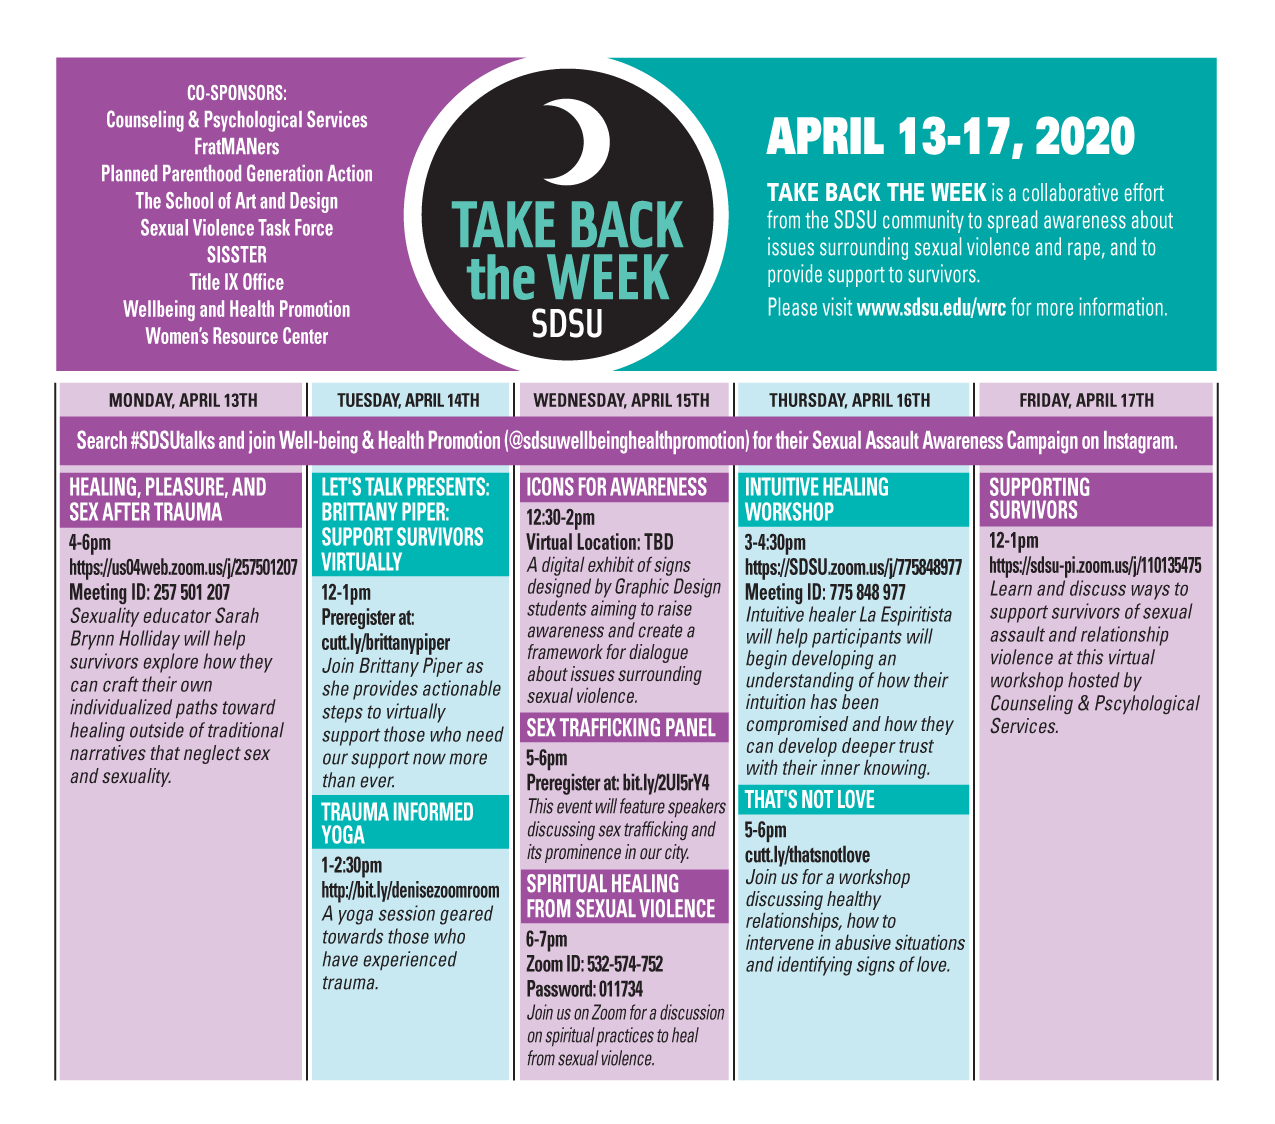 Take Back the Week, April 13-17, 2020